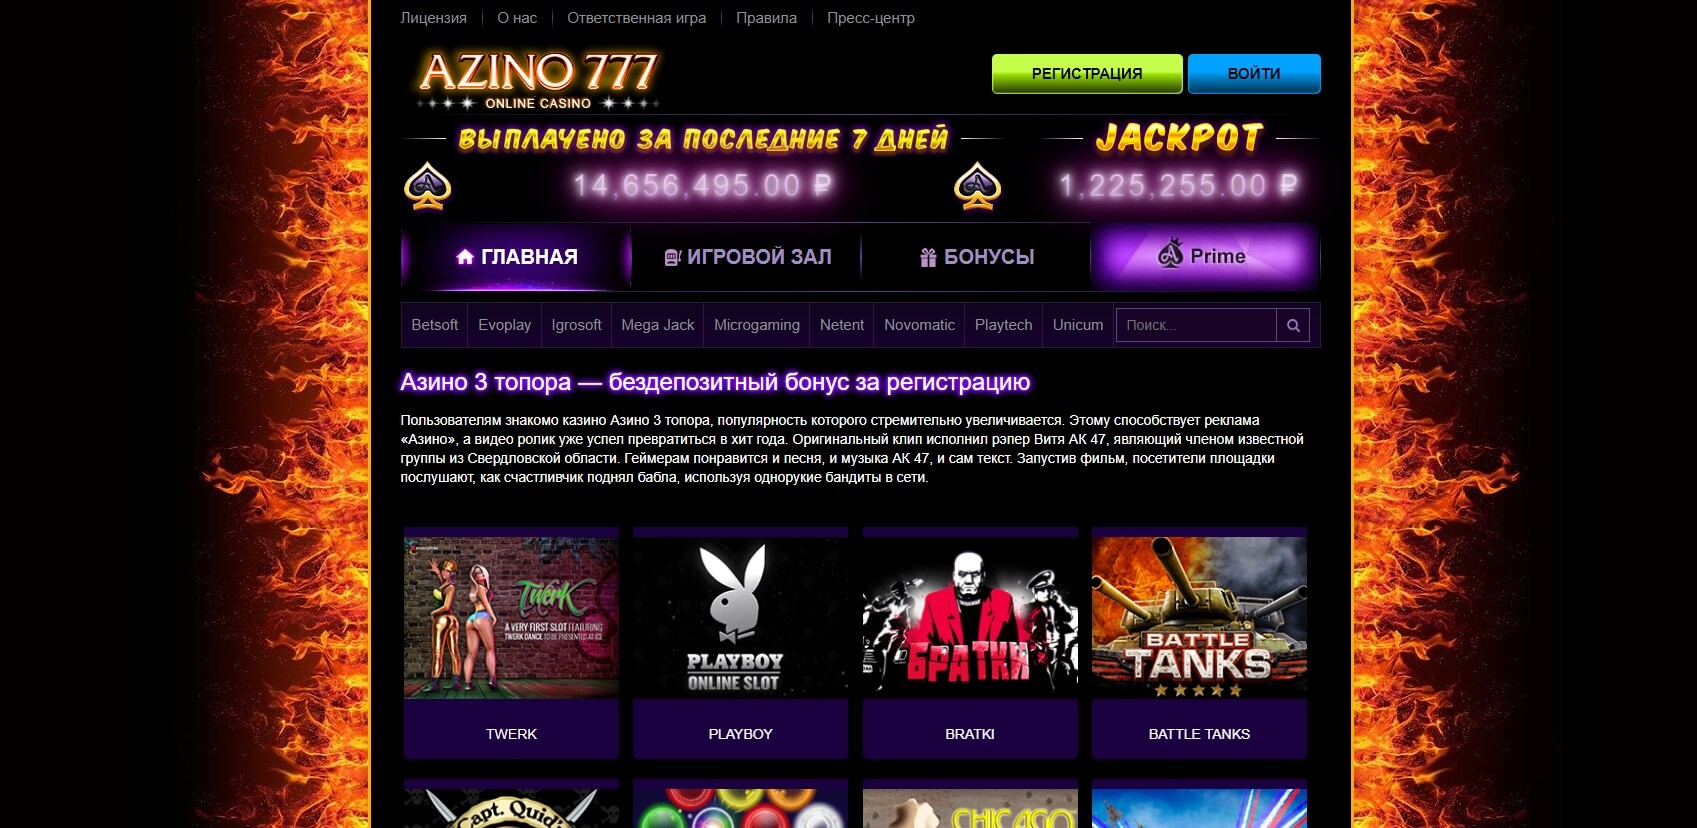 Азино777 вход мобильная версия casino play casino онлайн казино с выводом денег на яндекс